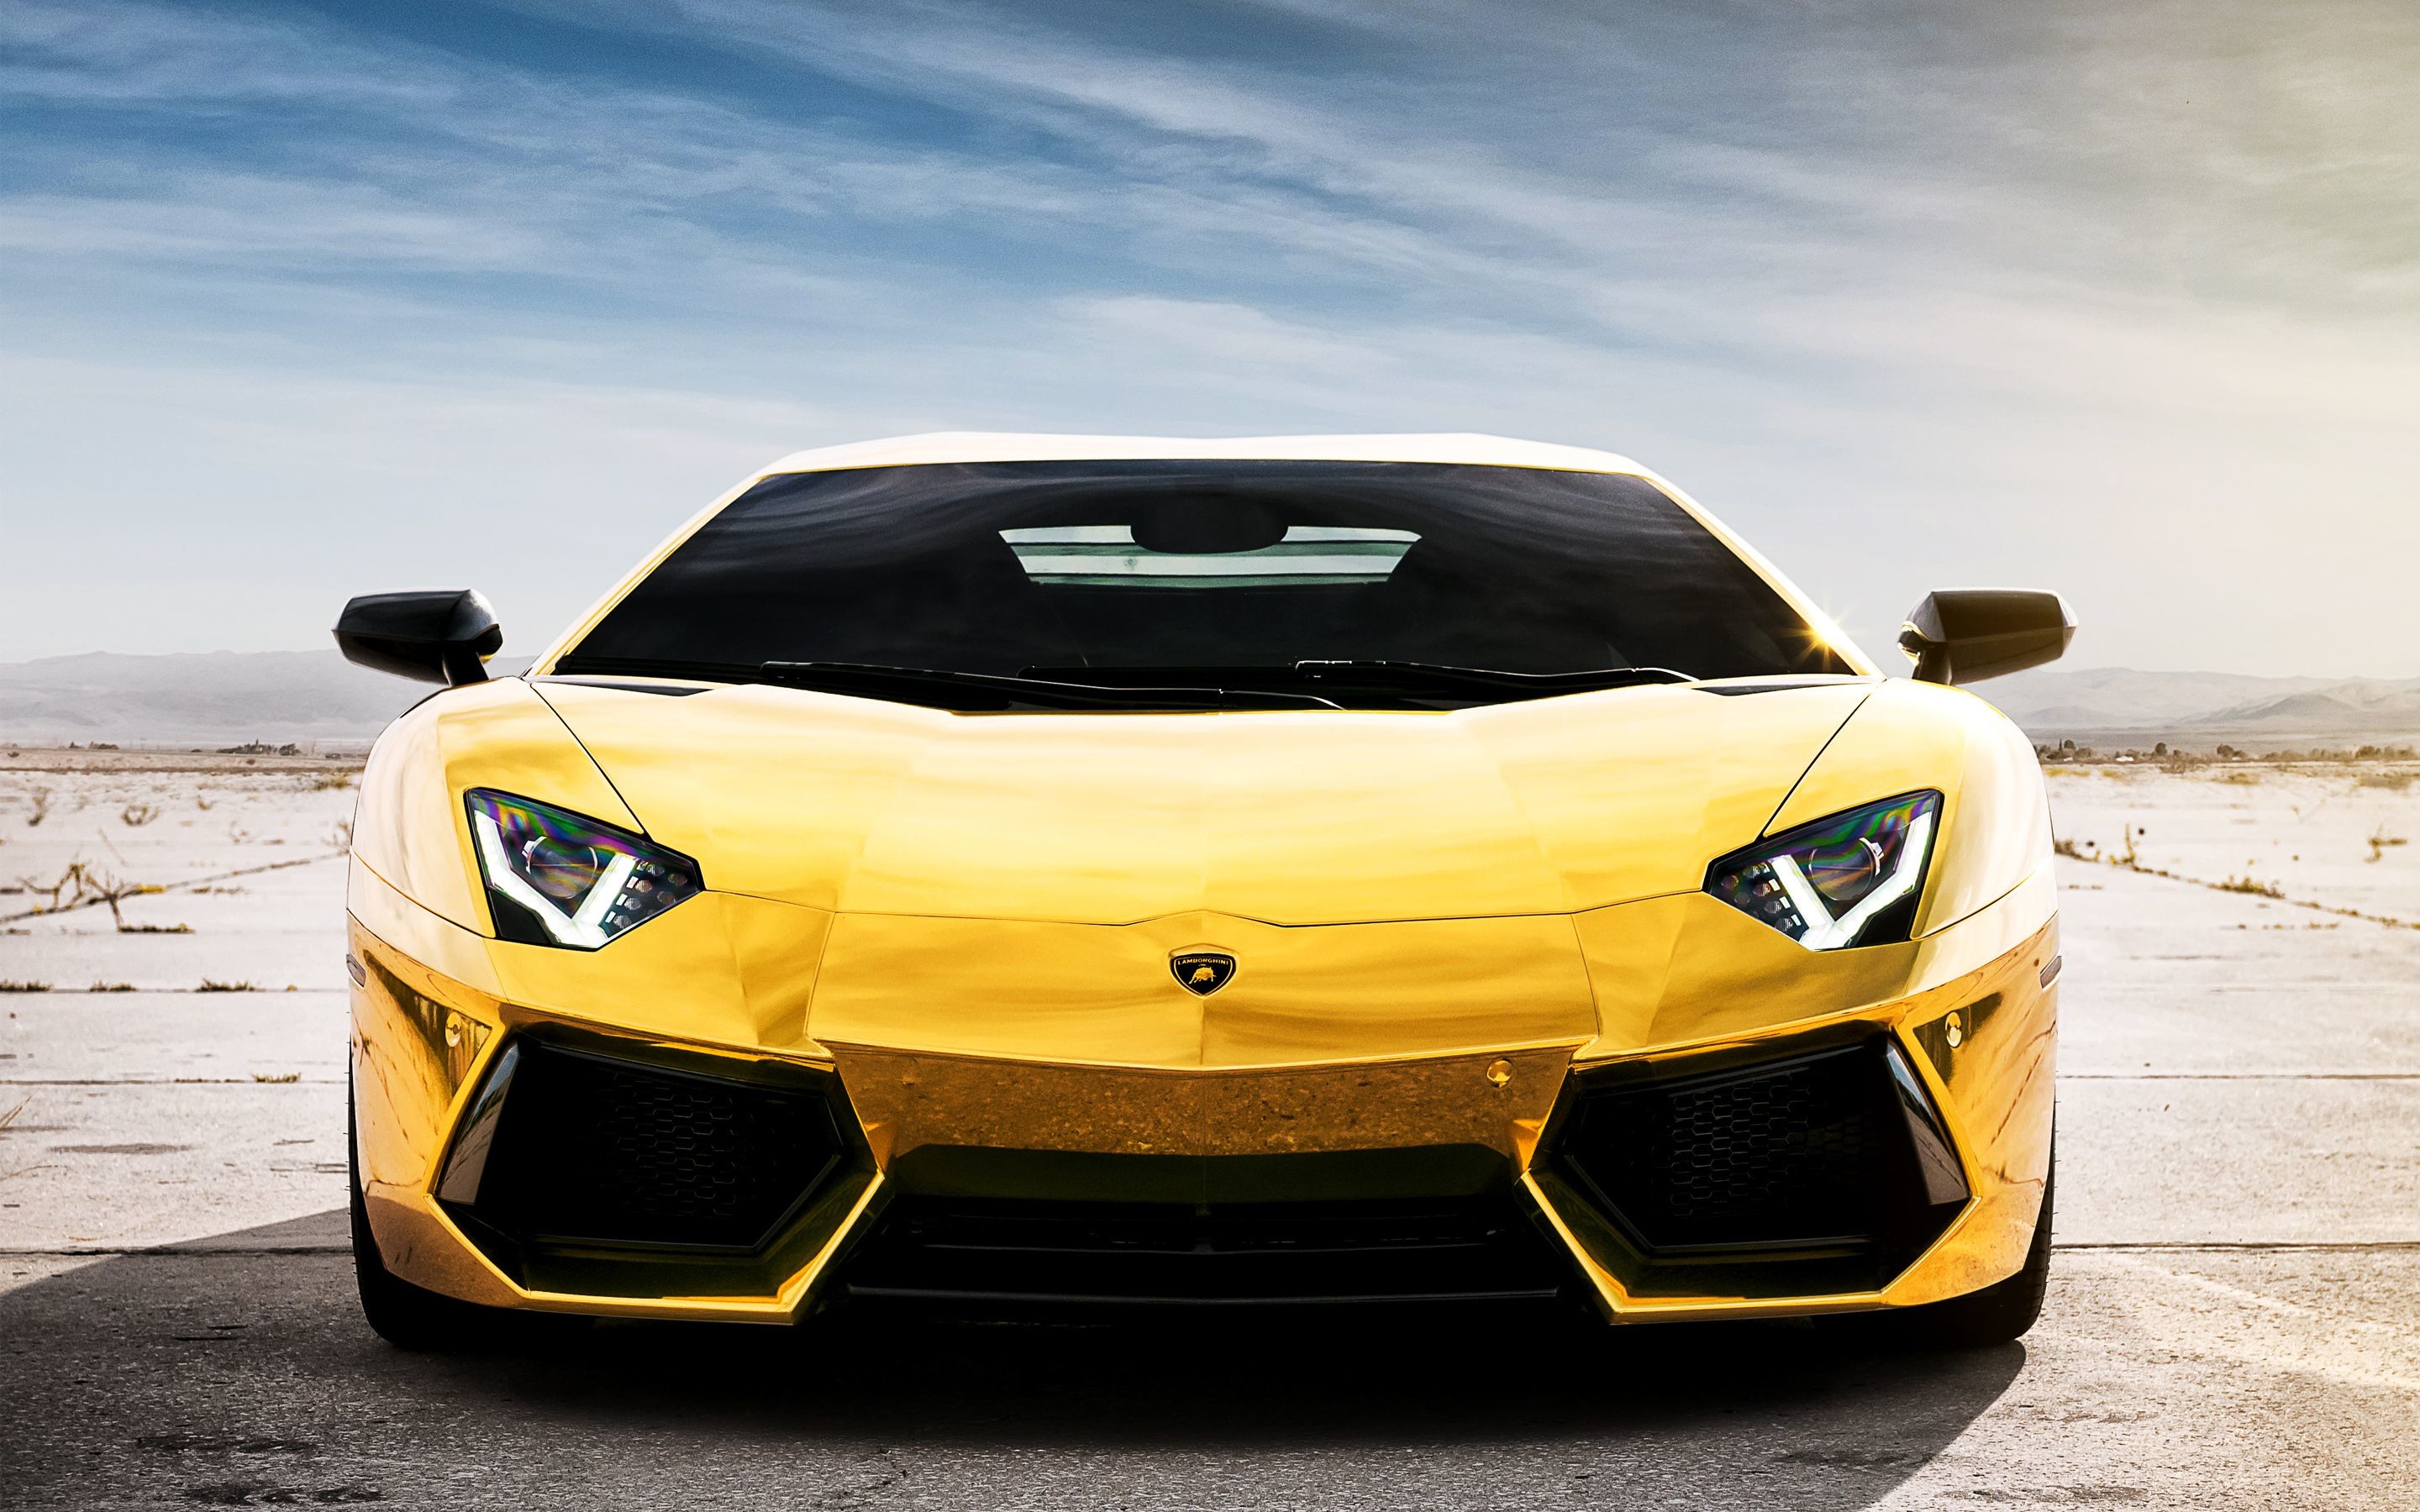 Hình nền Lamborghini vàng sẽ mang đến cho bạn một trải nghiệm đỉnh cao của chiếc xe siêu sang này. Hãy chia sẻ với bạn bè của mình những hình nền độc đáo này, để ai cũng được hưởng thụ sự đẳng cấp và sang trọng mà chiếc xe này mang lại.